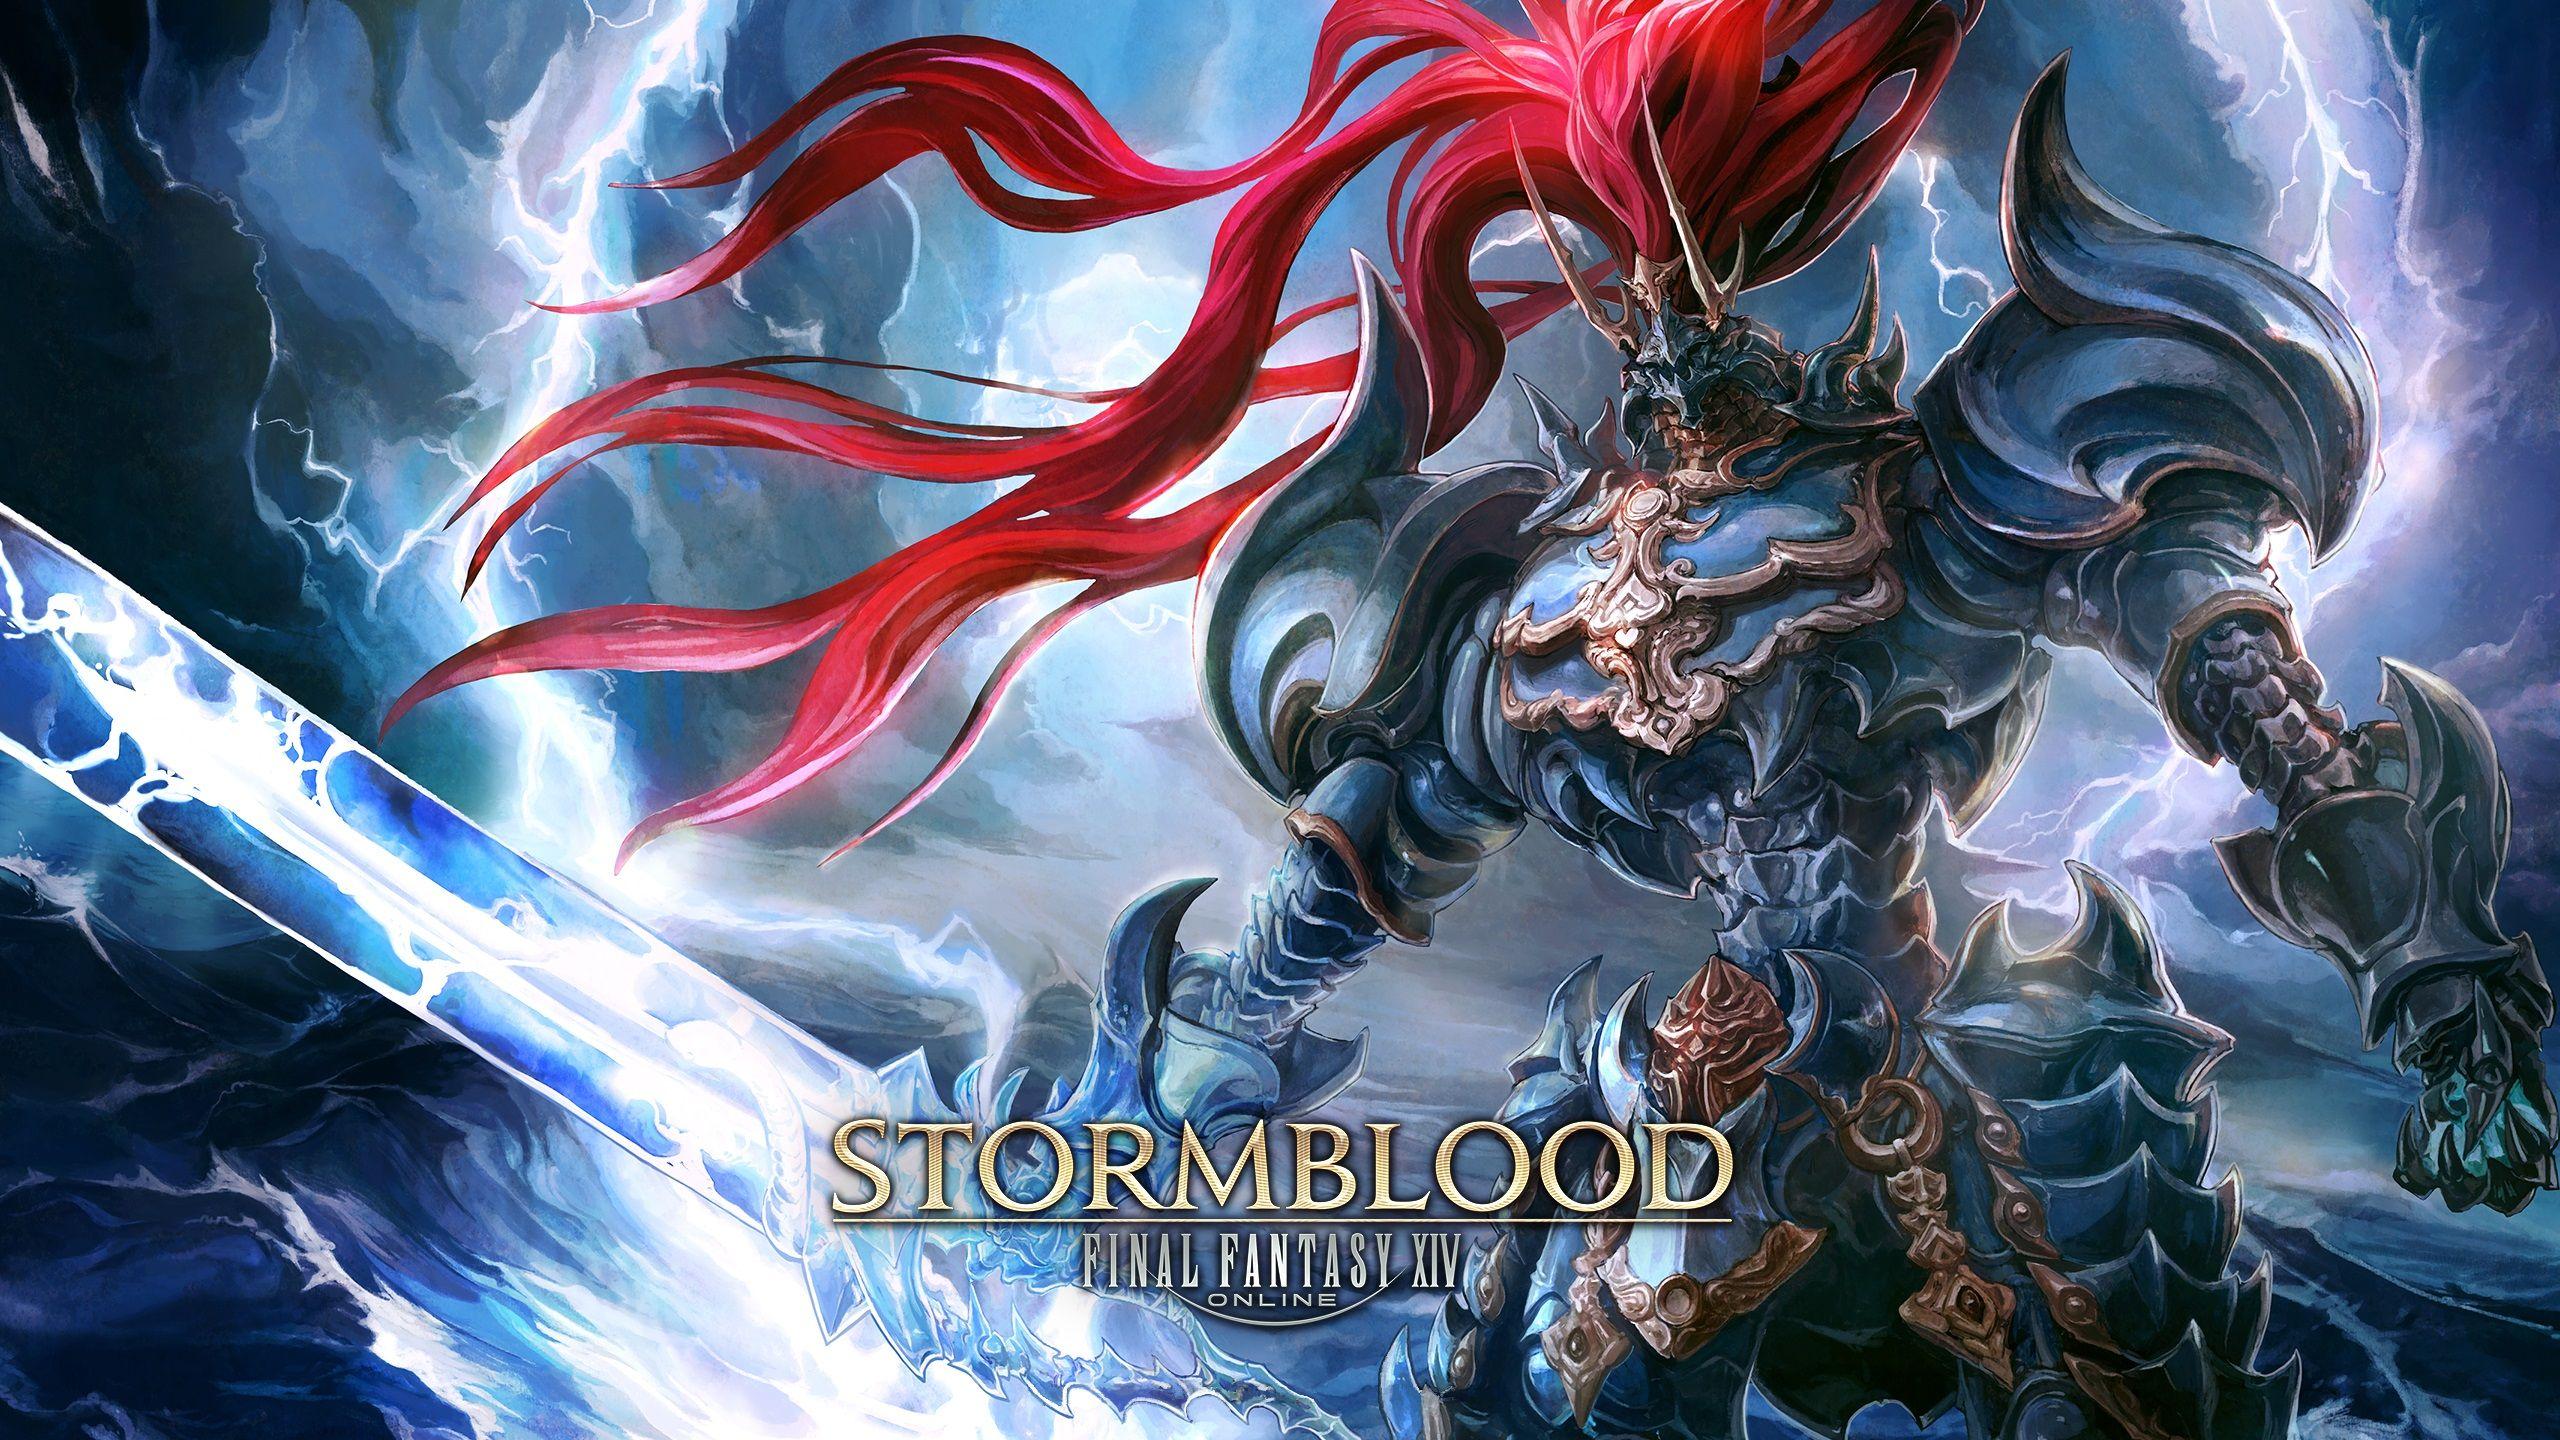 Final Fantasy Xiv Stormblood Wallpaperx1440